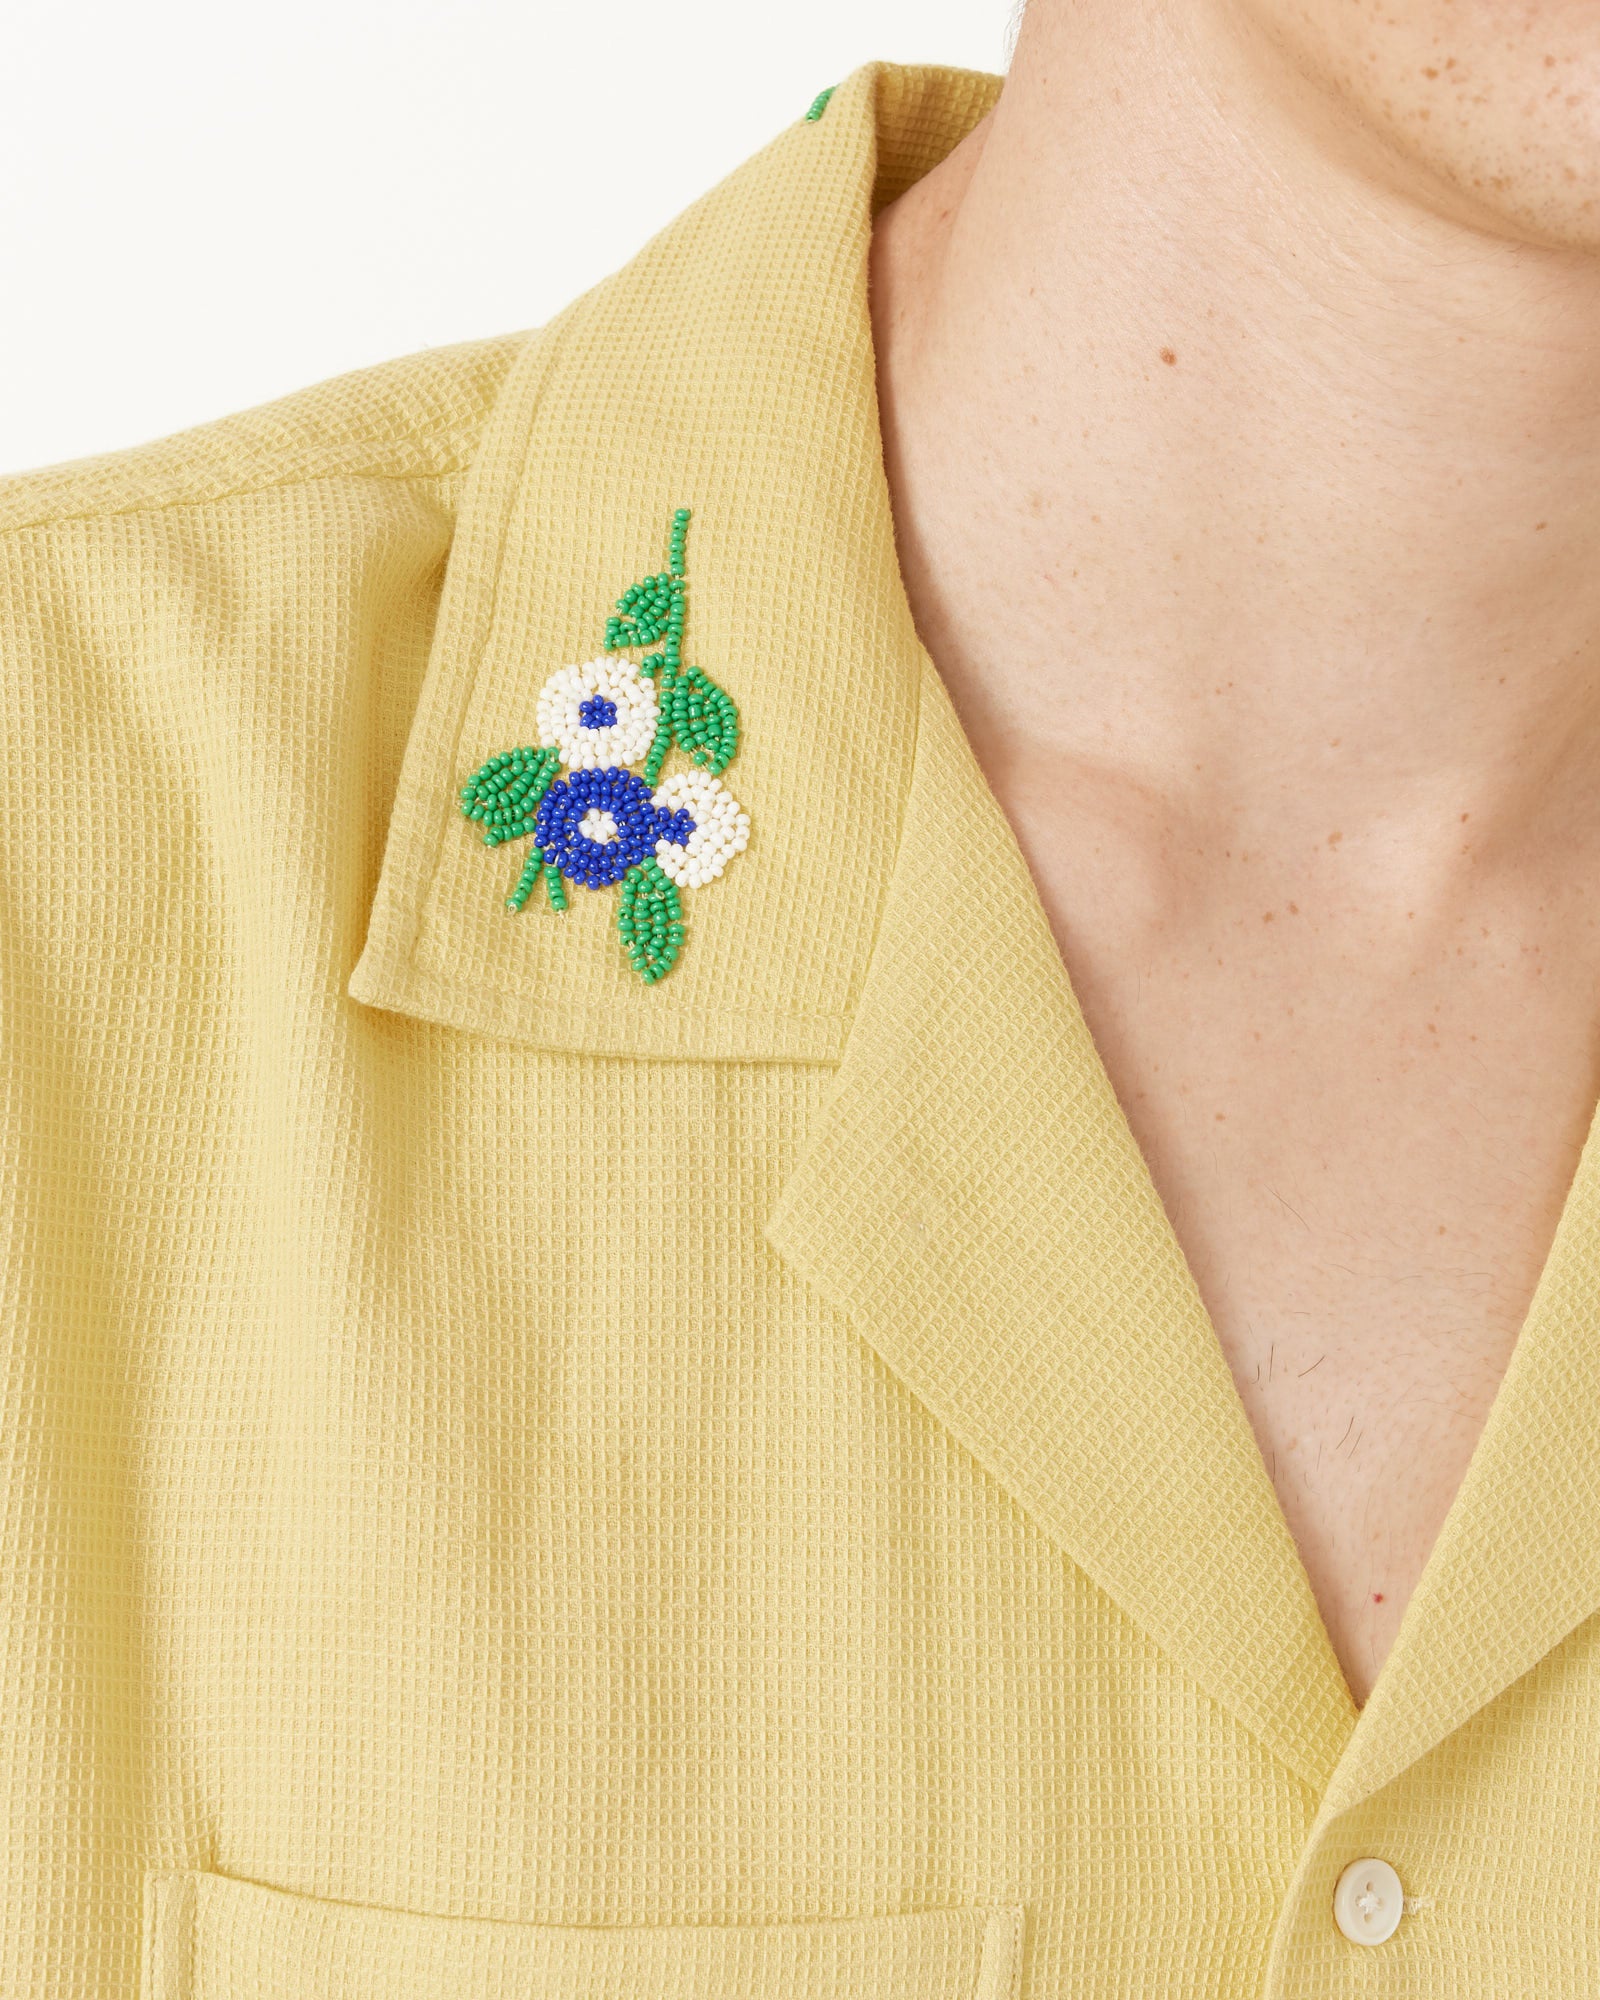 Beaded Chicory Short Sleeve Shirt in Yellow